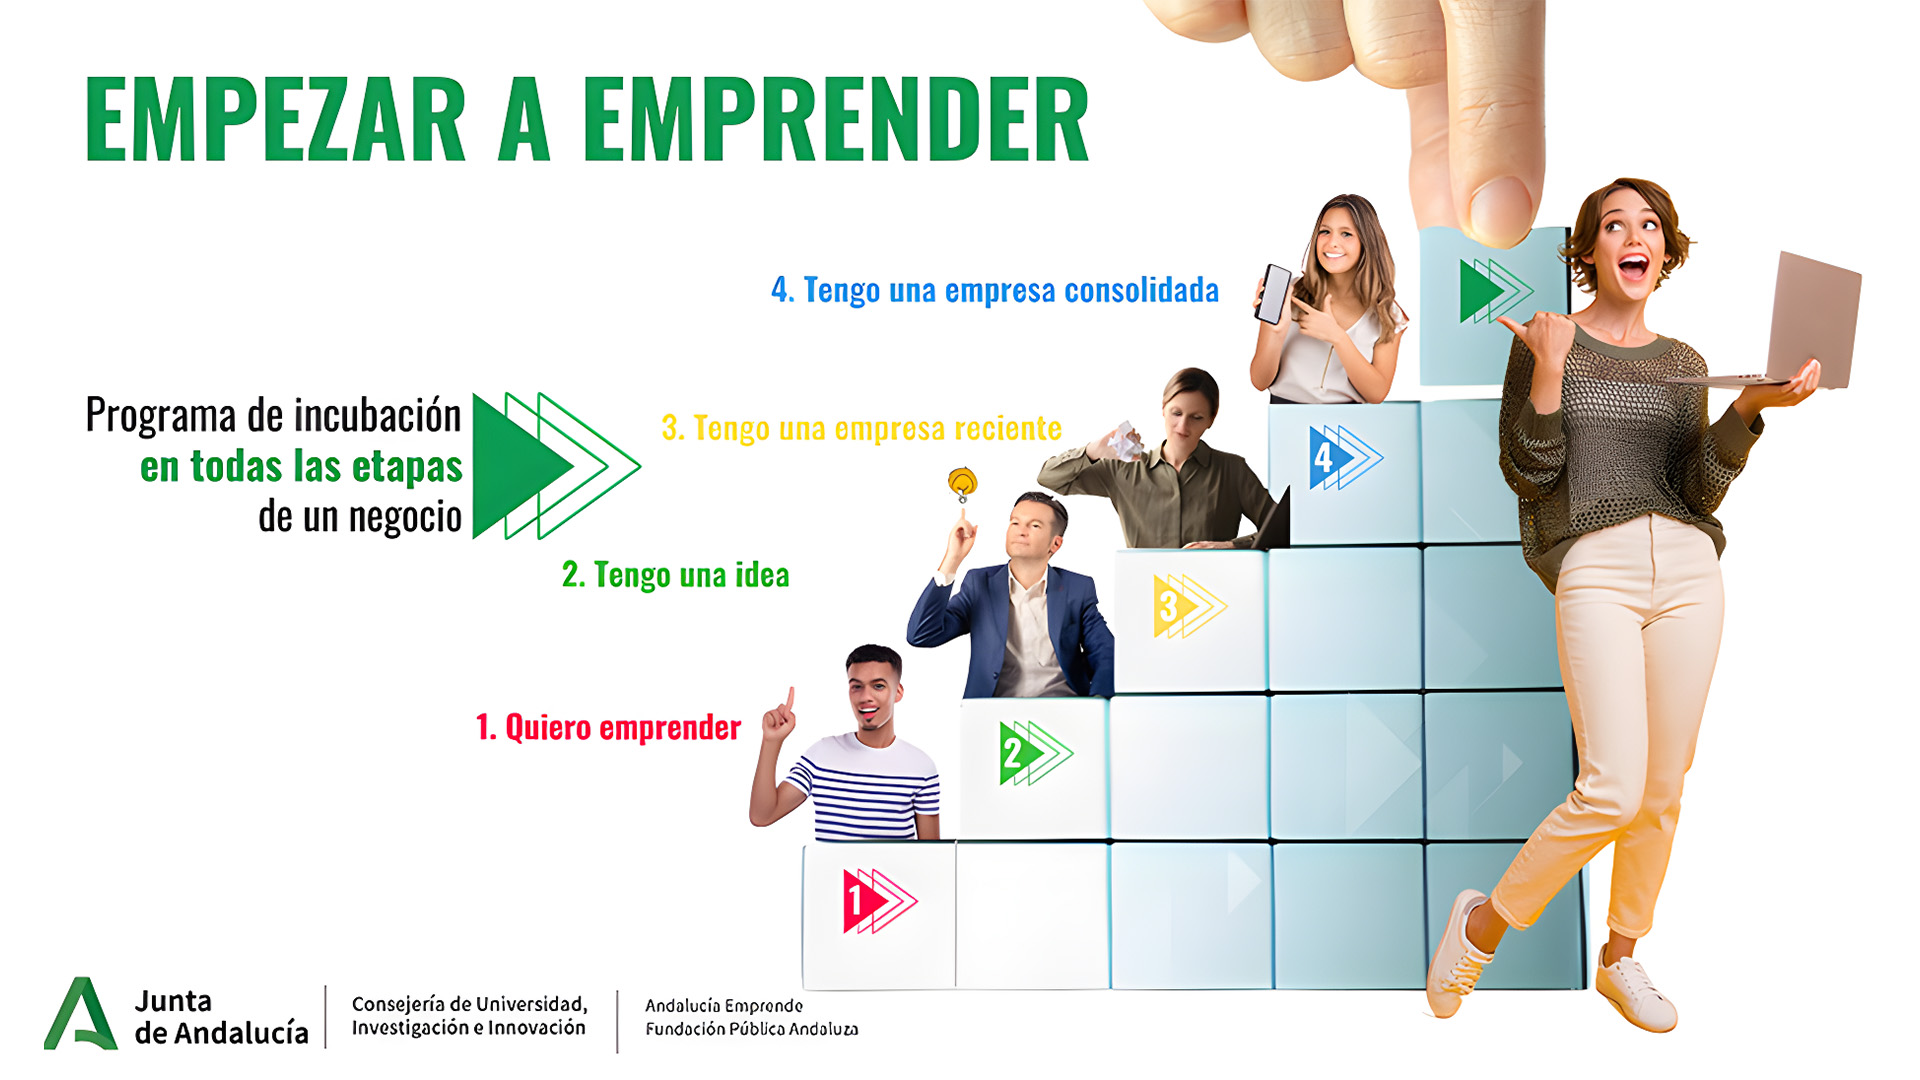 Se amplía el programa 'Empezar a emprender' de la Junta de Andalucía a las startups y empresas consolidadas